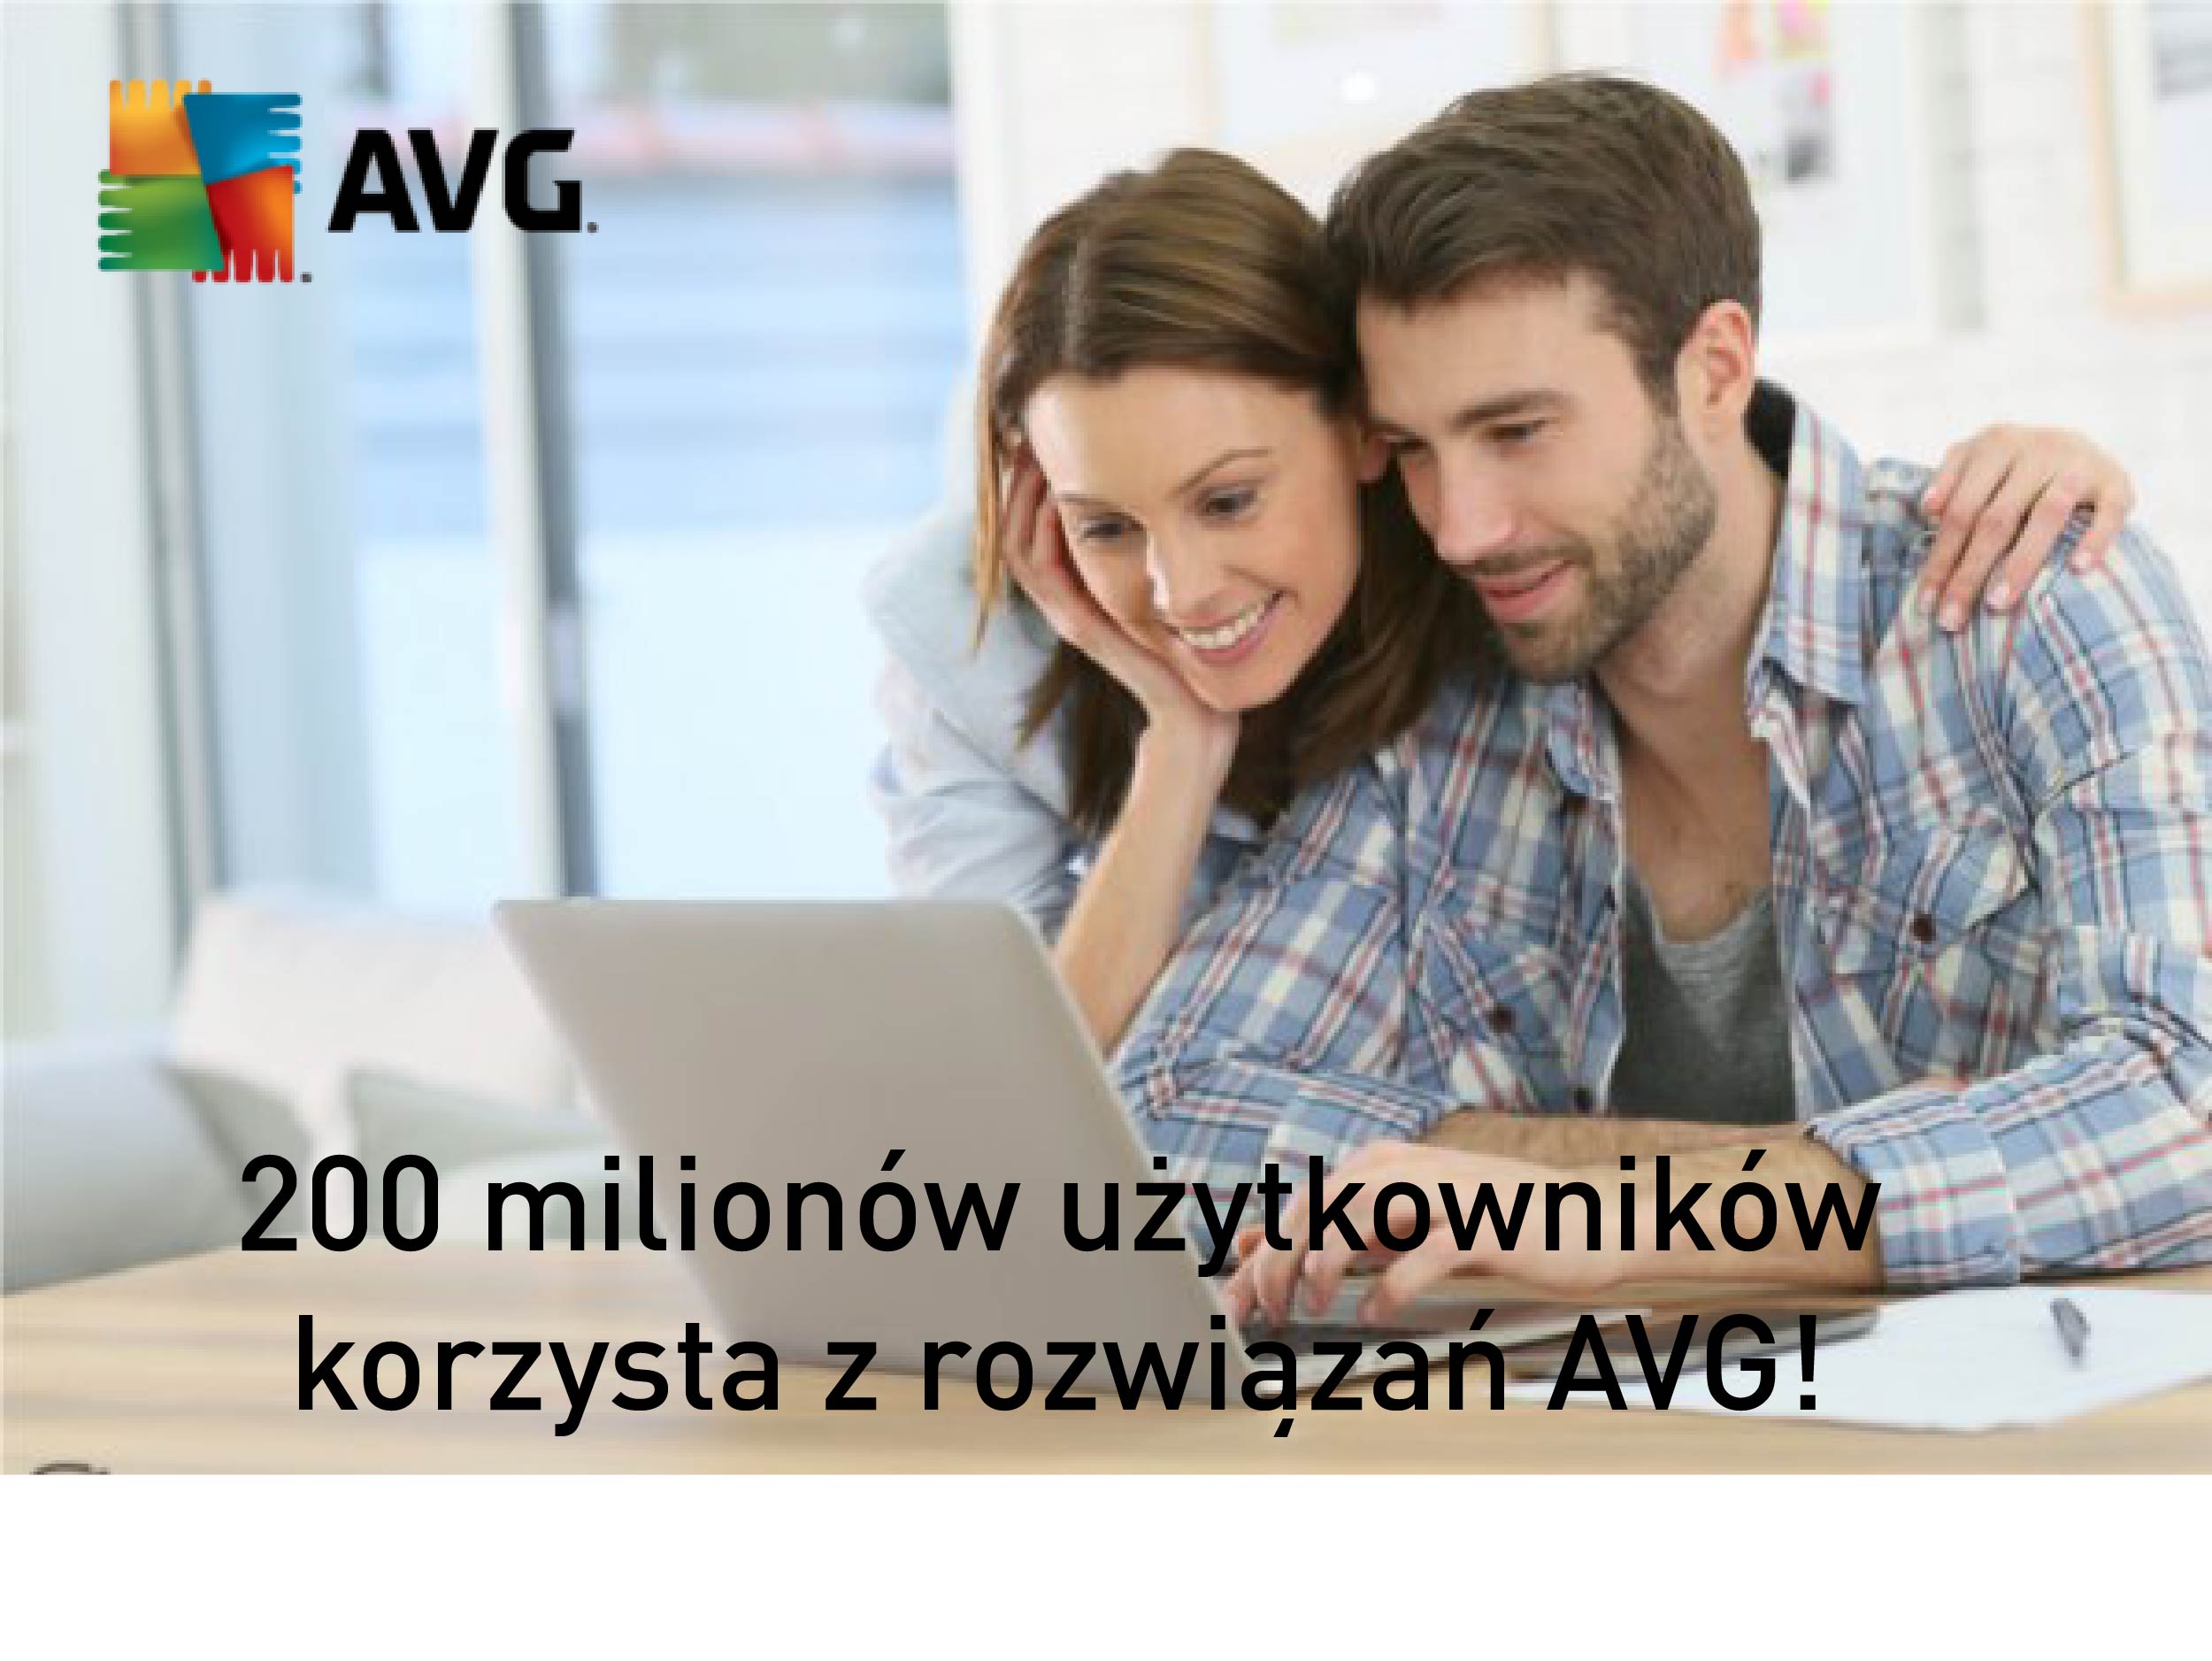 200 000 użytkowników AVG